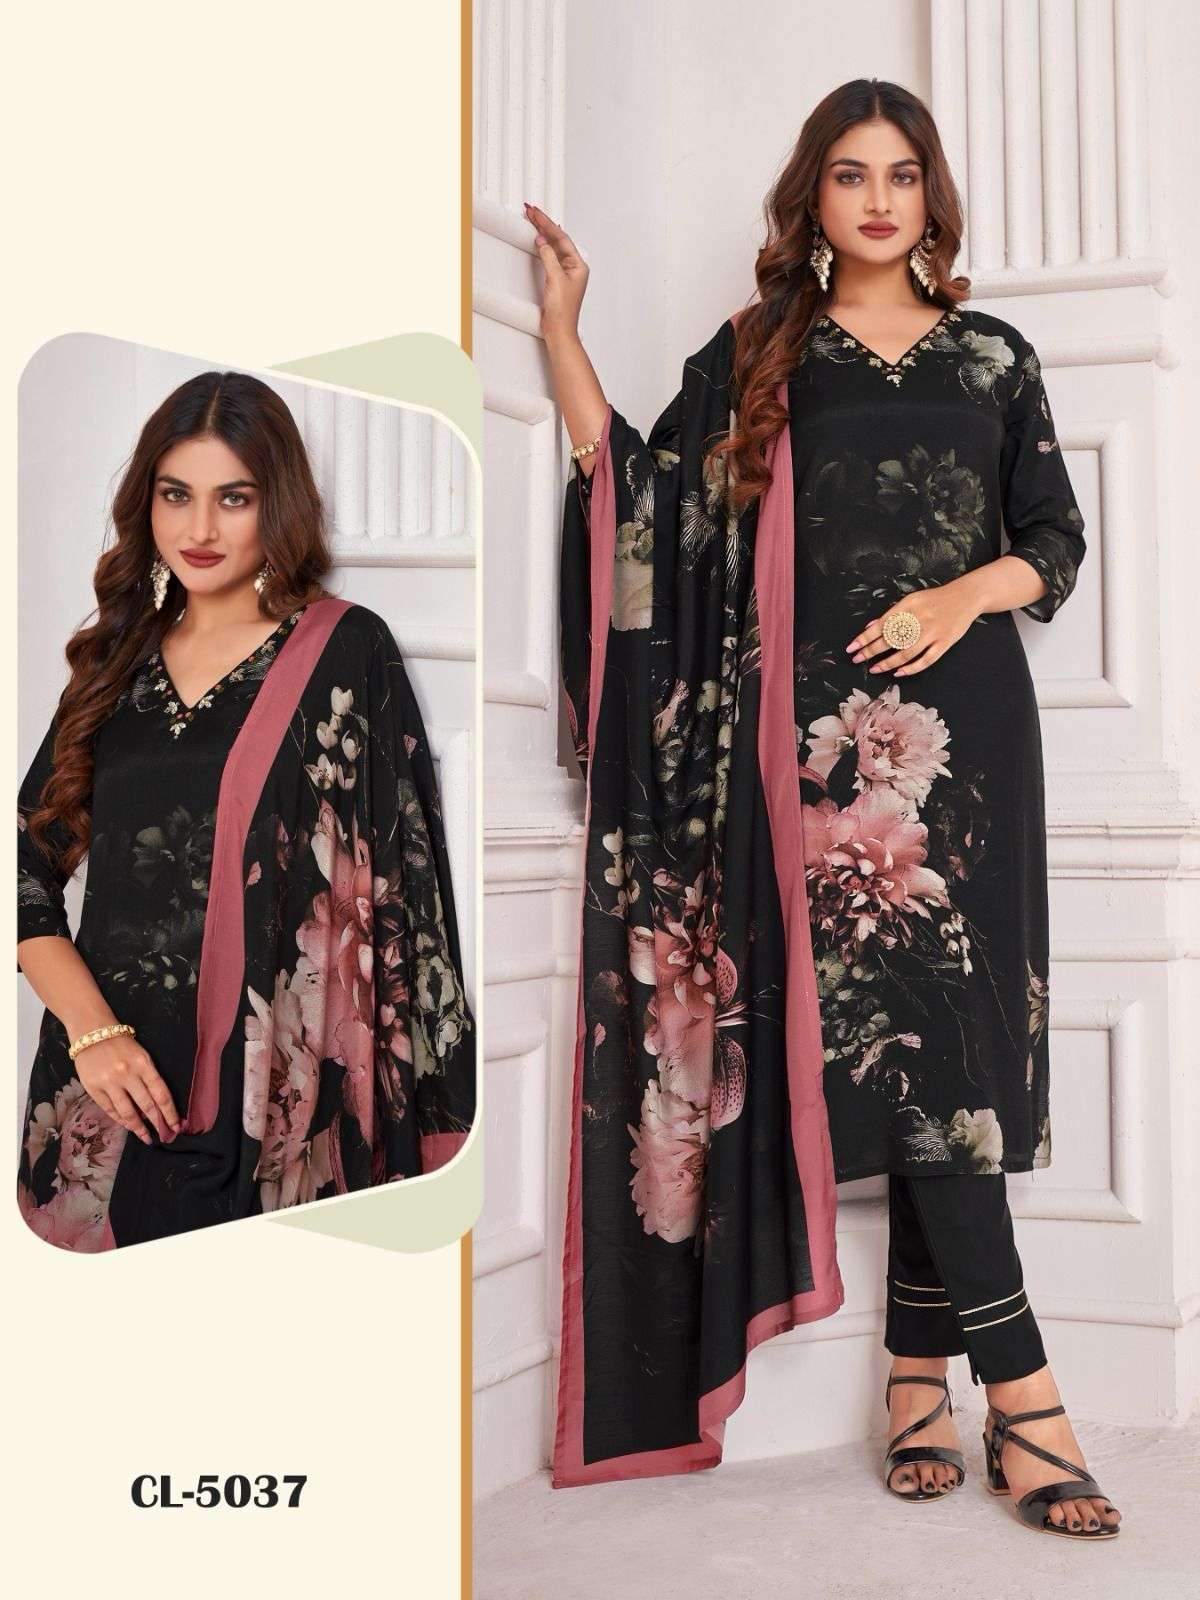 MUSLIN SUITS - Type of Fabric - Salwar Kameez